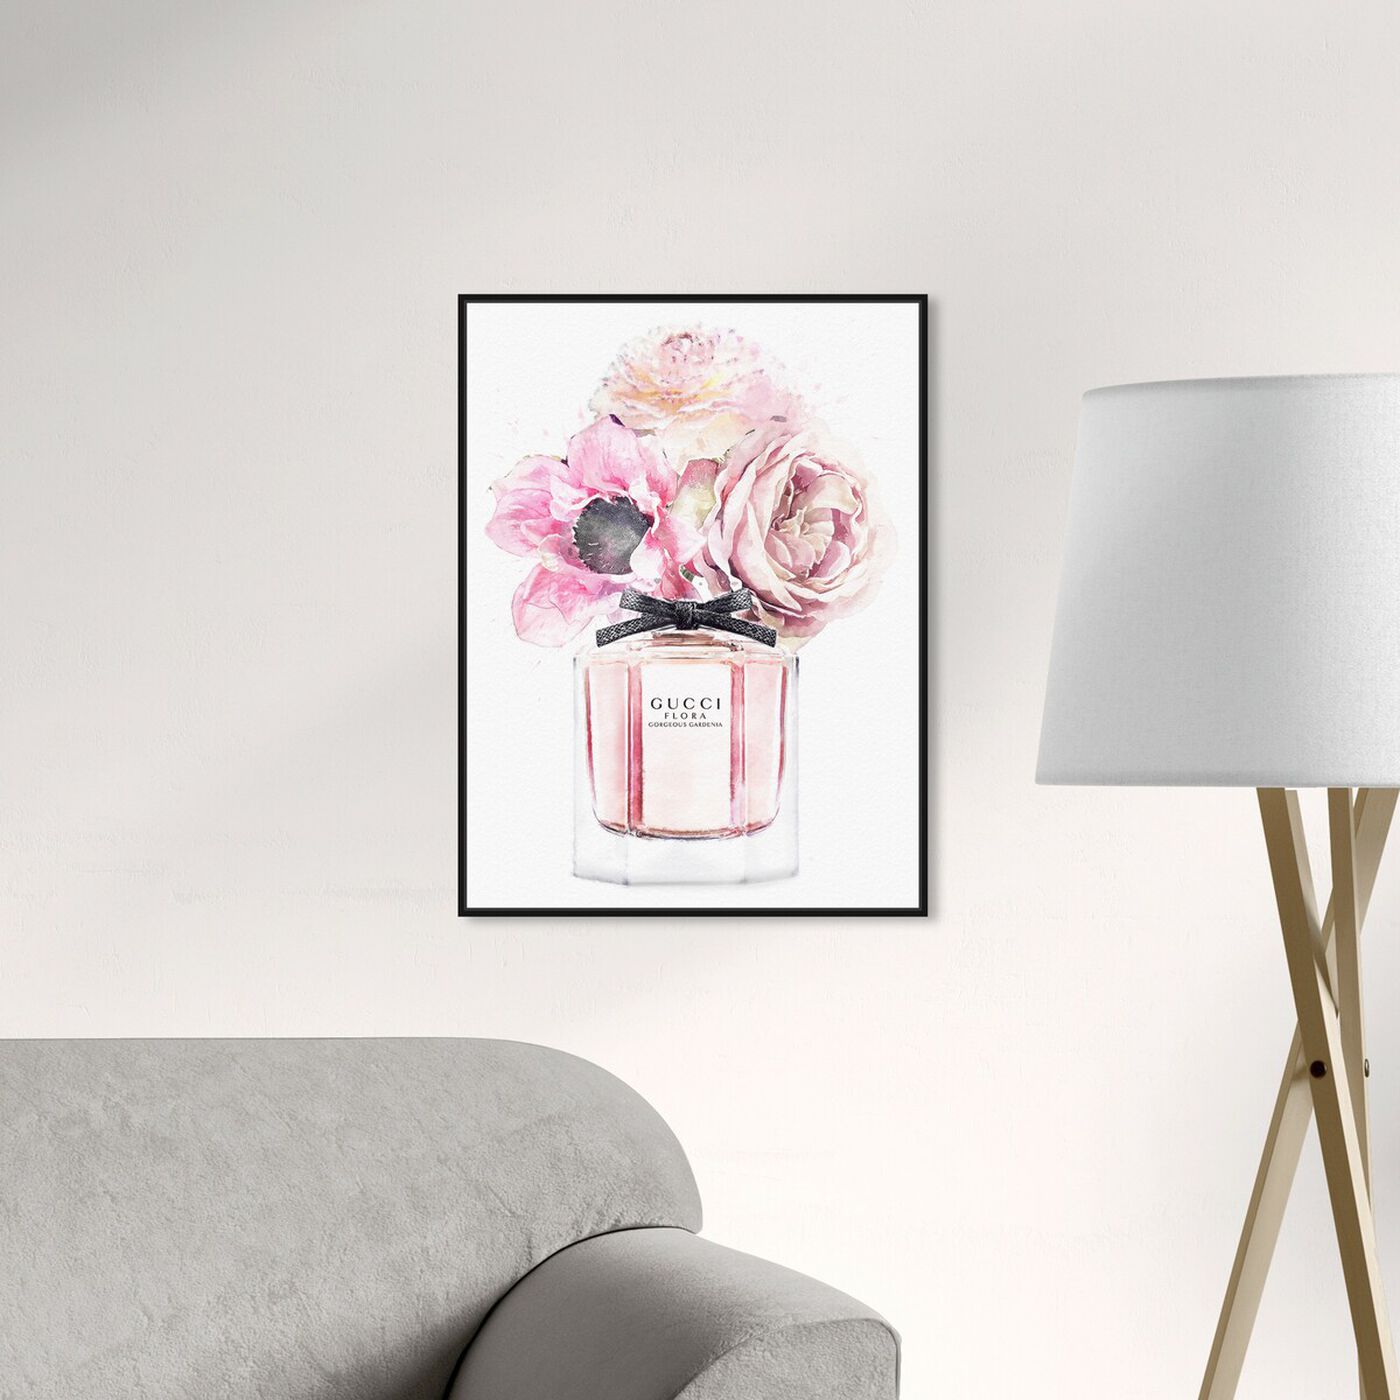 Gorgeous Gardenia Perfume: Luxury Wall Art | Oliver Gal